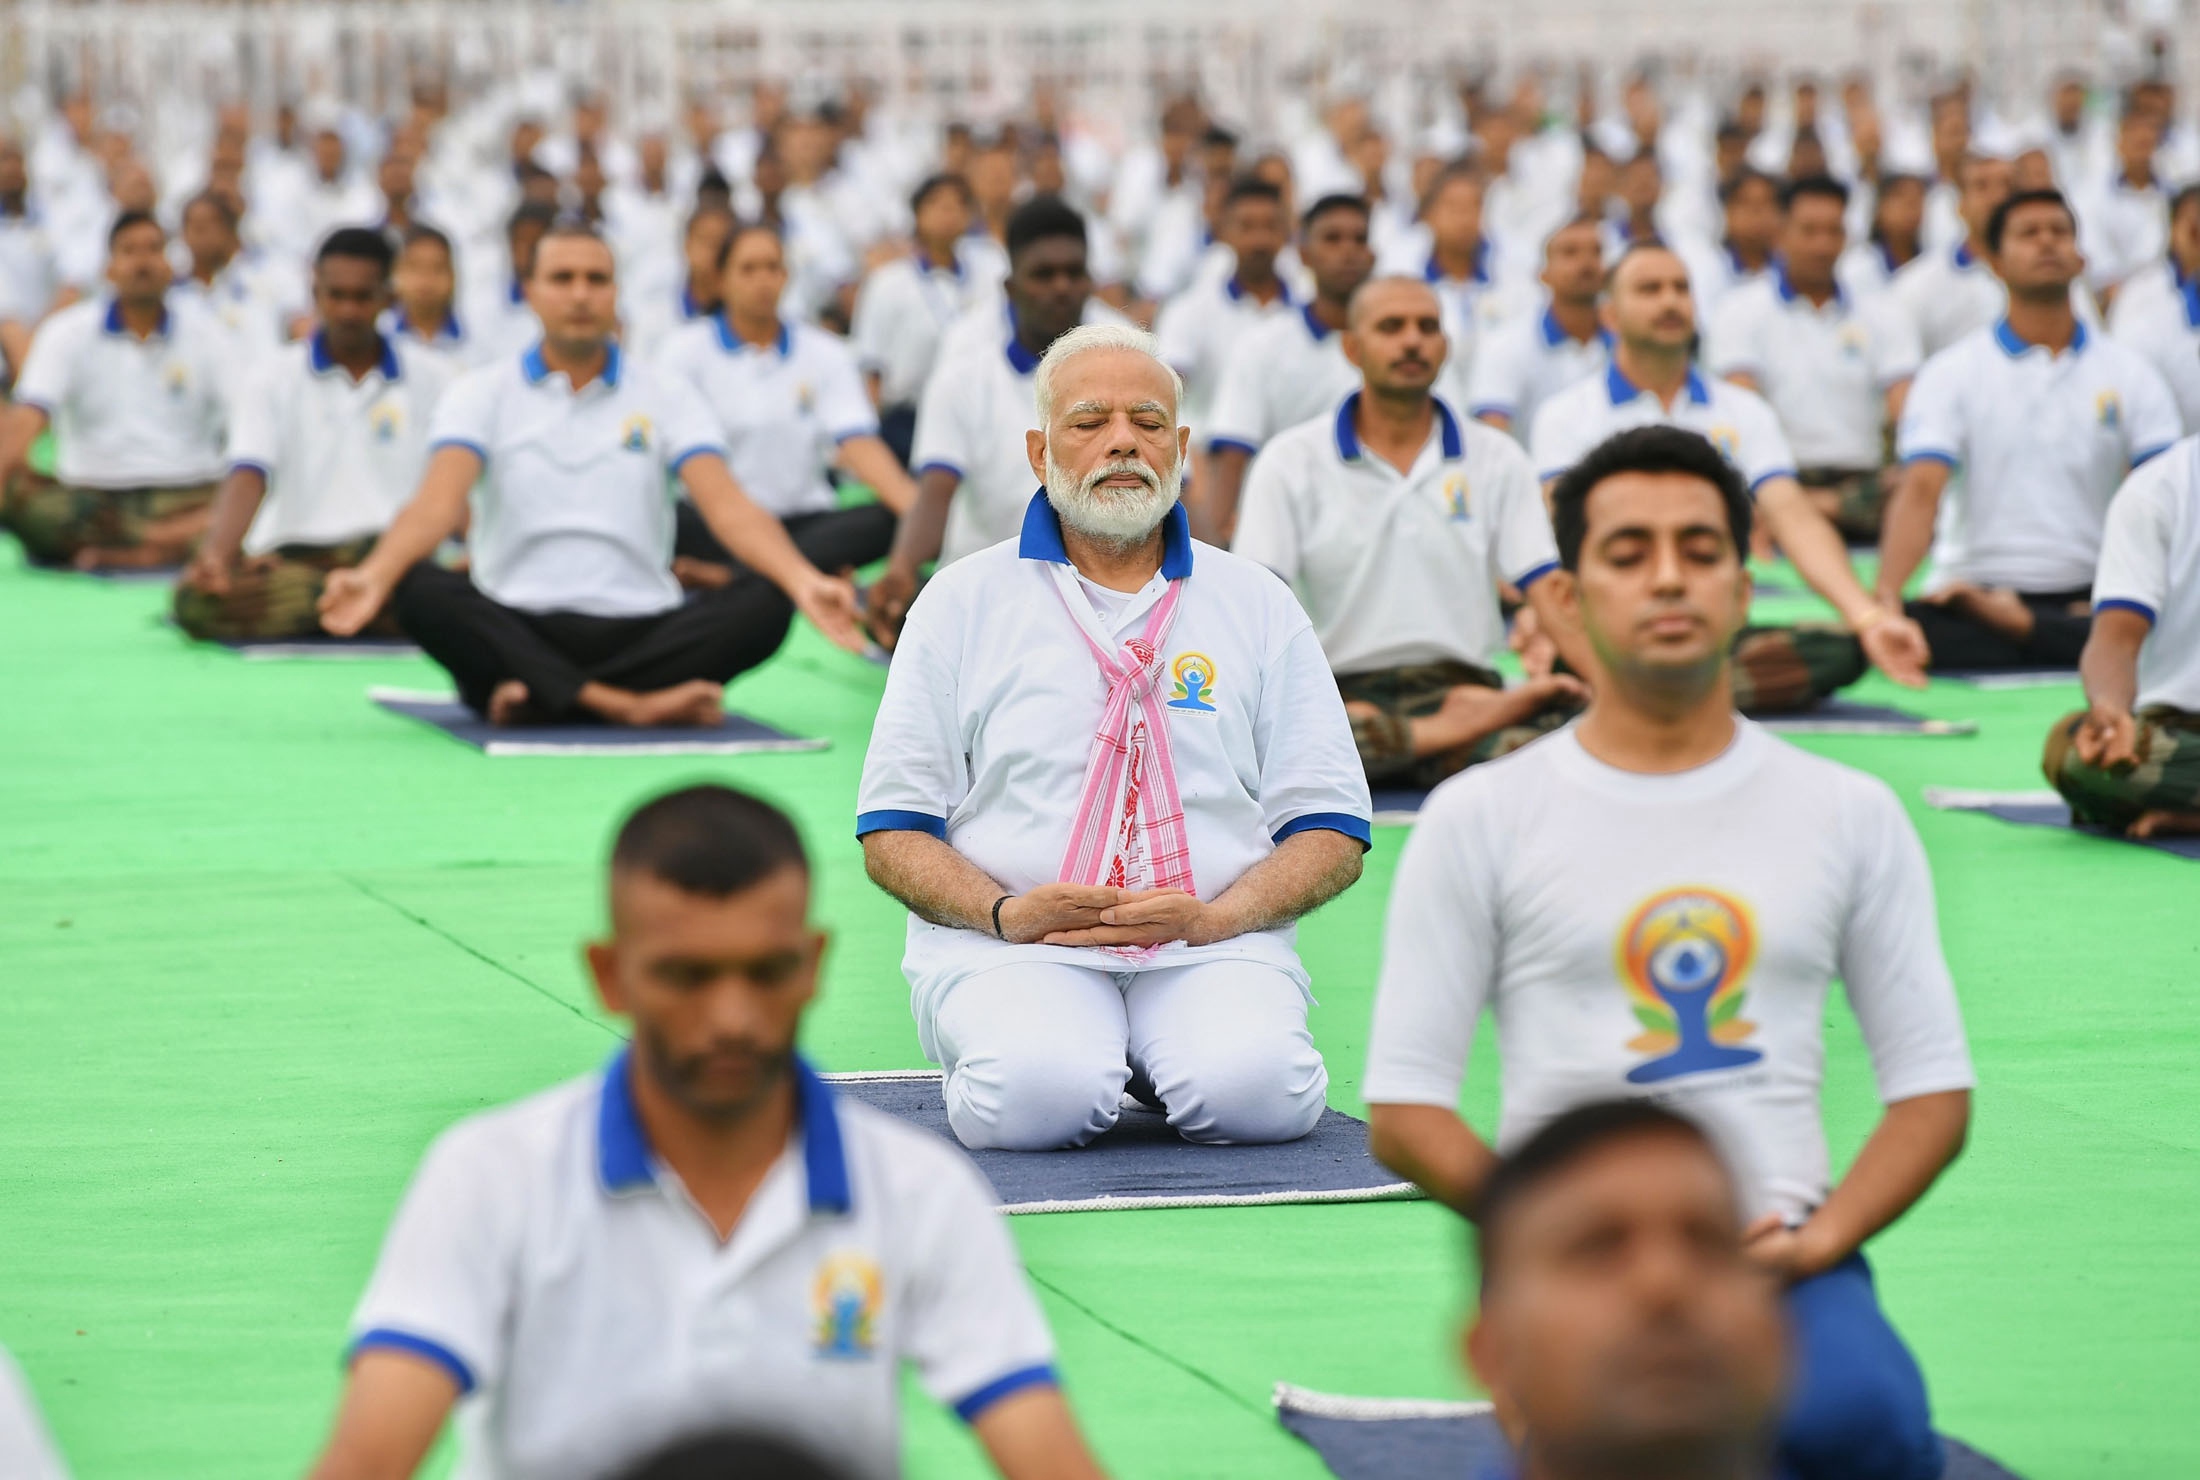 庆祝国际瑜伽日 印度总理莫迪带领数万人一起做瑜伽